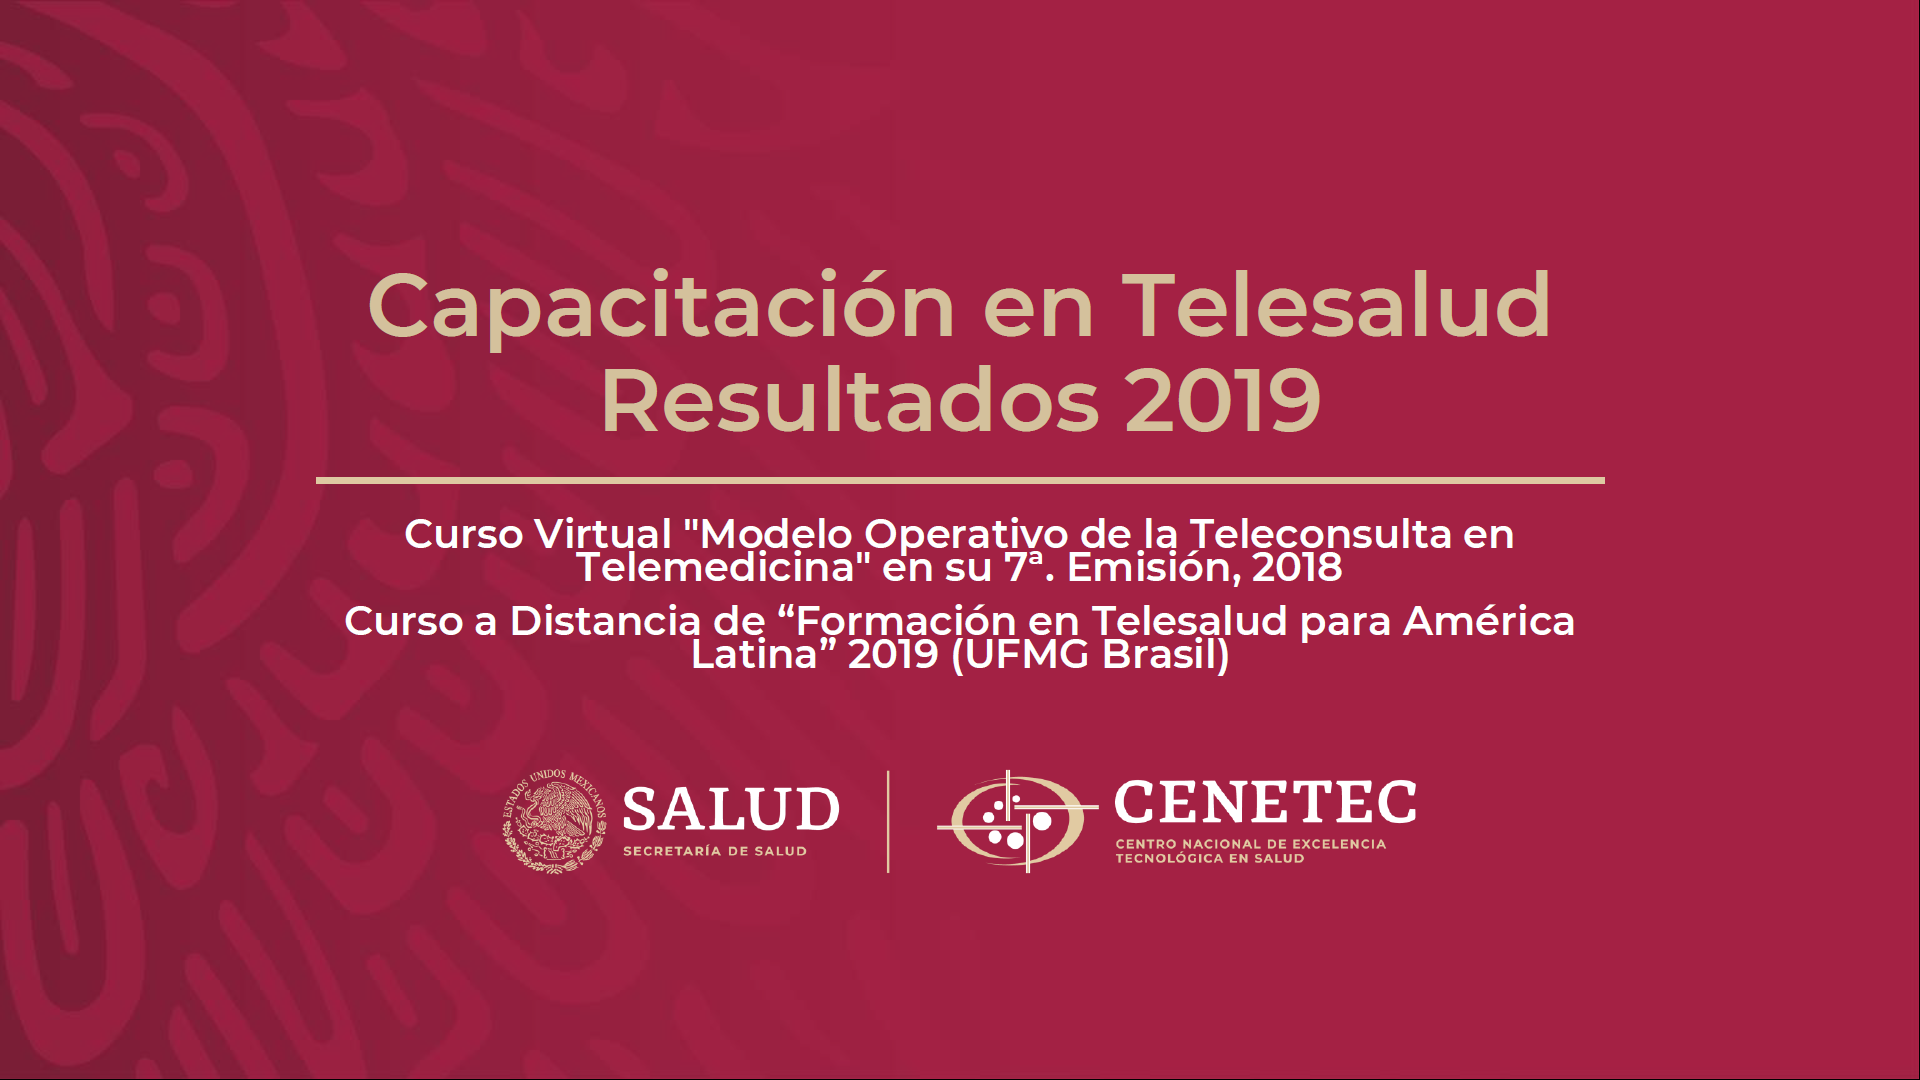 Capacitacion en Telesalud Resultados 2019